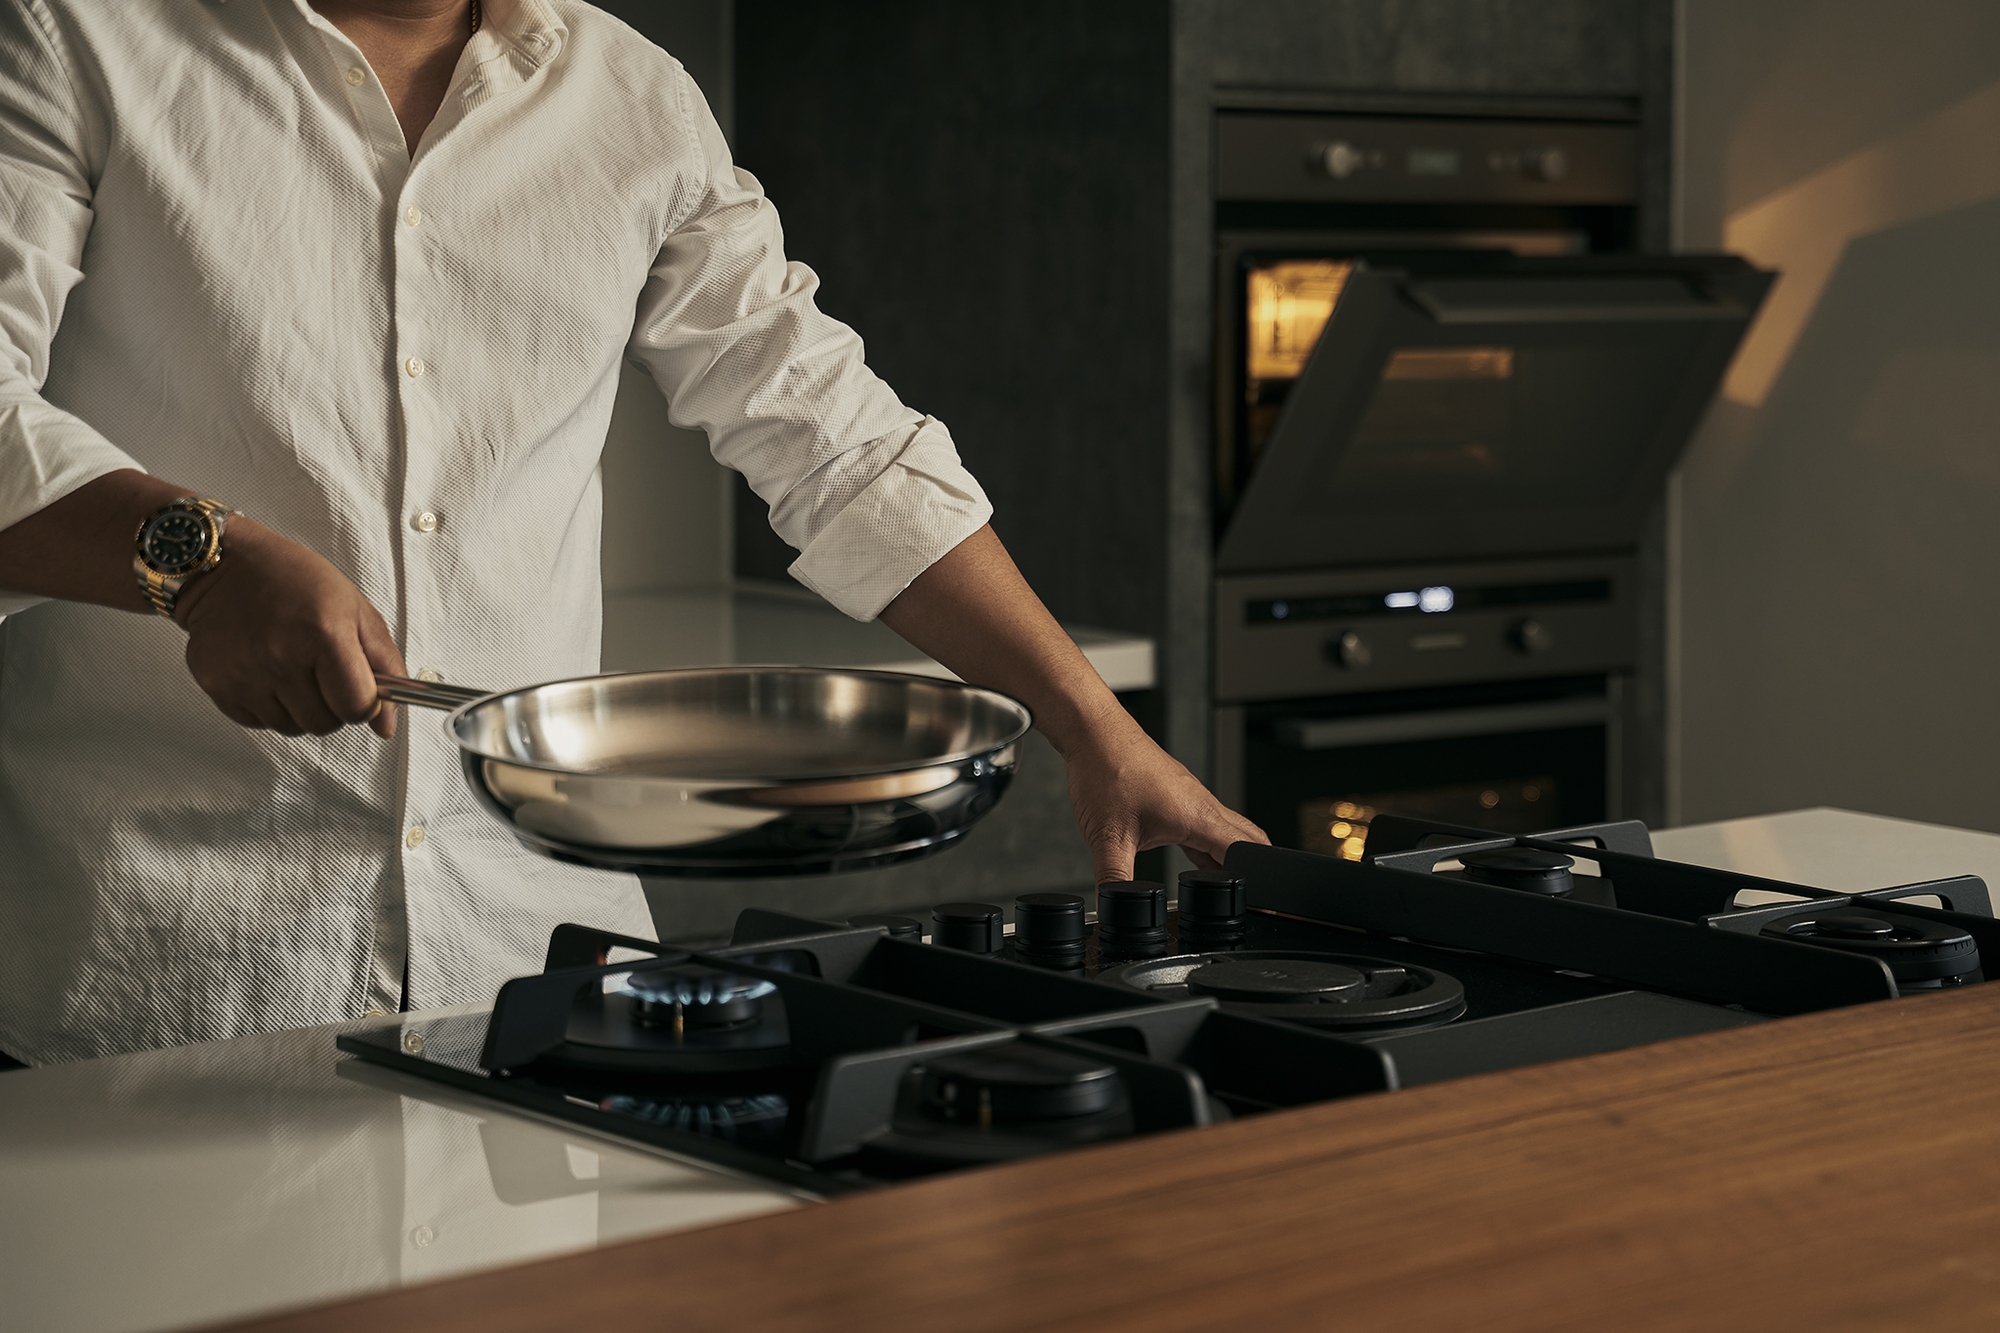 Quan niệm &quot;bếp ấm thì nhà êm&quot;, chàng trai độc thân chọn thiết bị nấu ăn &quot;cực sành&quot; để thoải mái trổ tài nấu nướng - Ảnh 1.